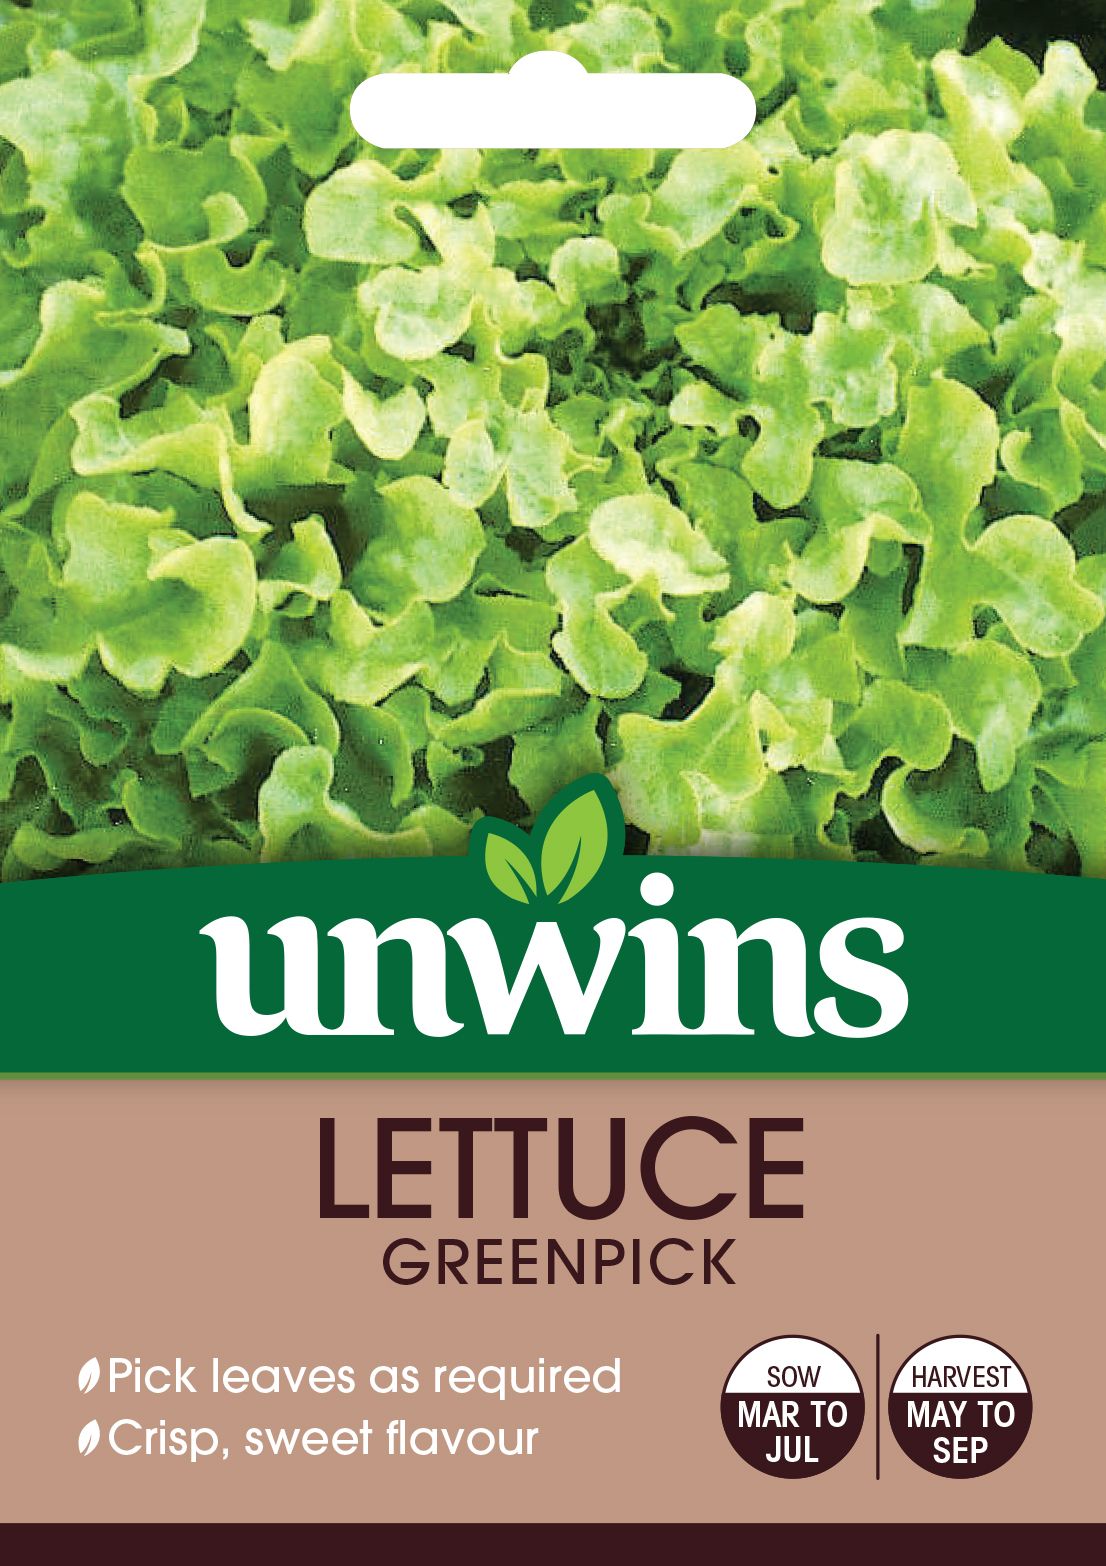 Lettuce (Loose) Greenpick